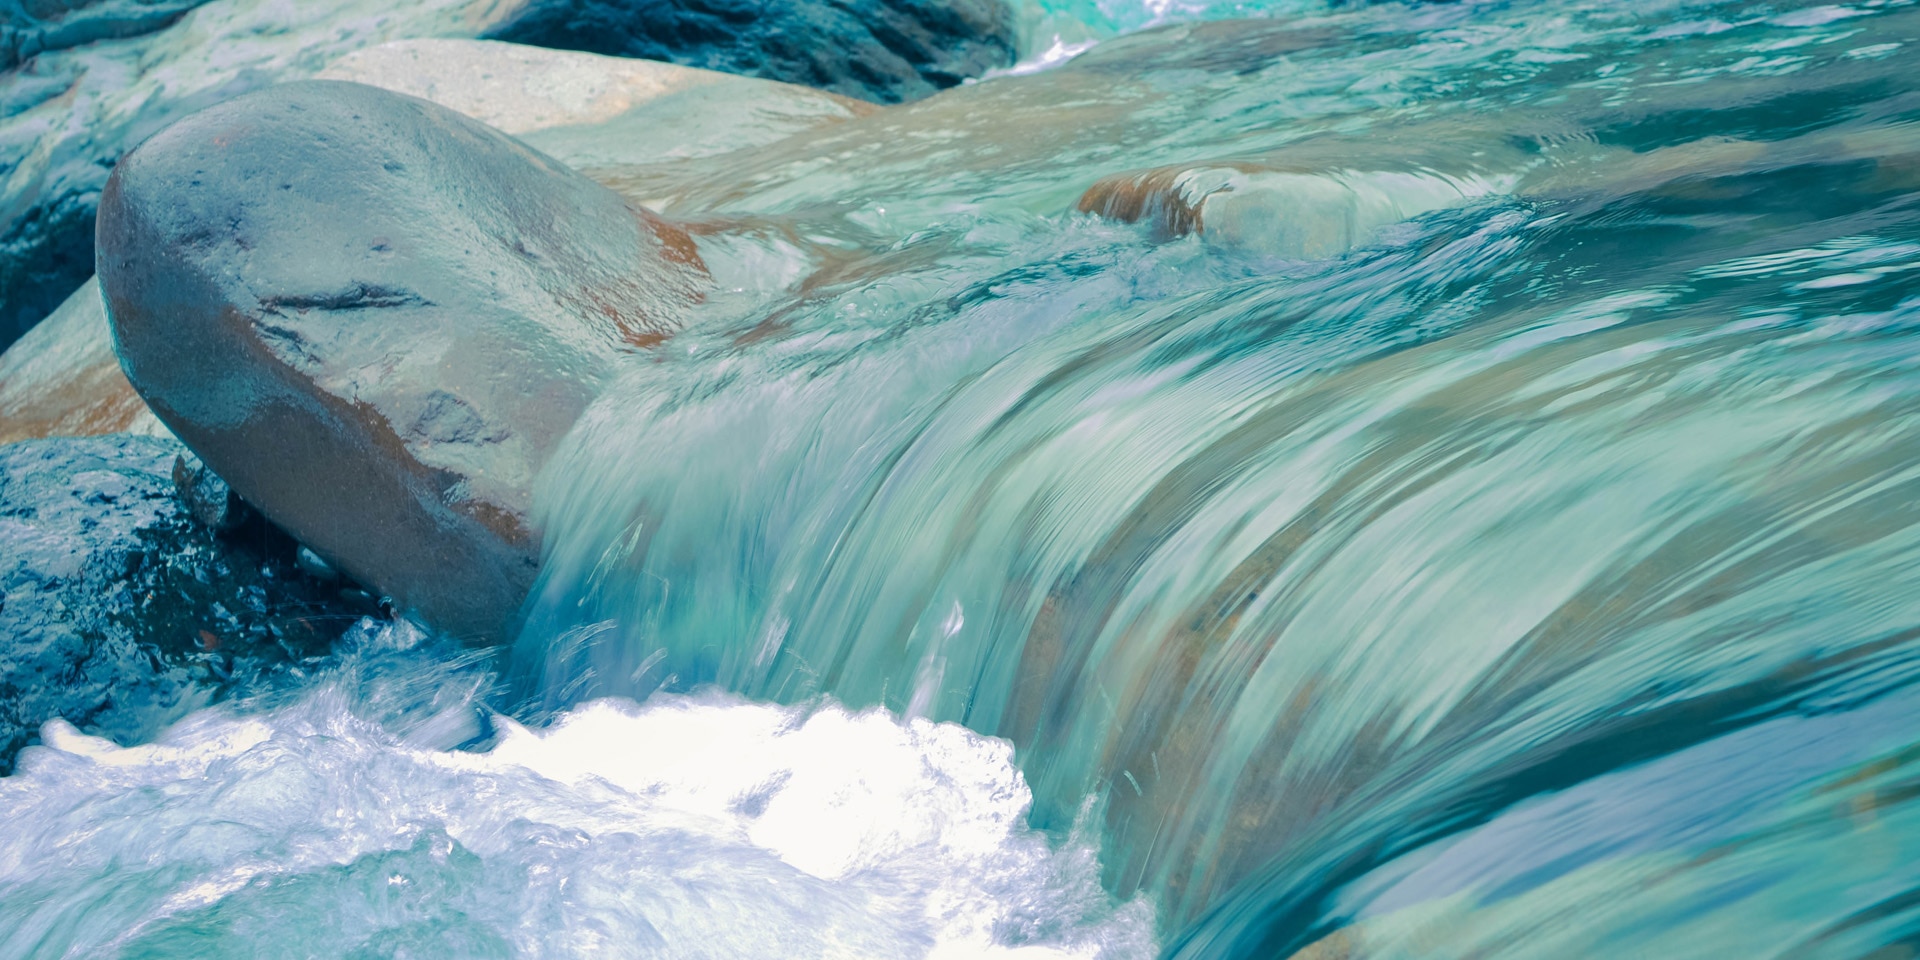 Das blaue Wasser eines Baches plätschert über steinigen Untergrund.